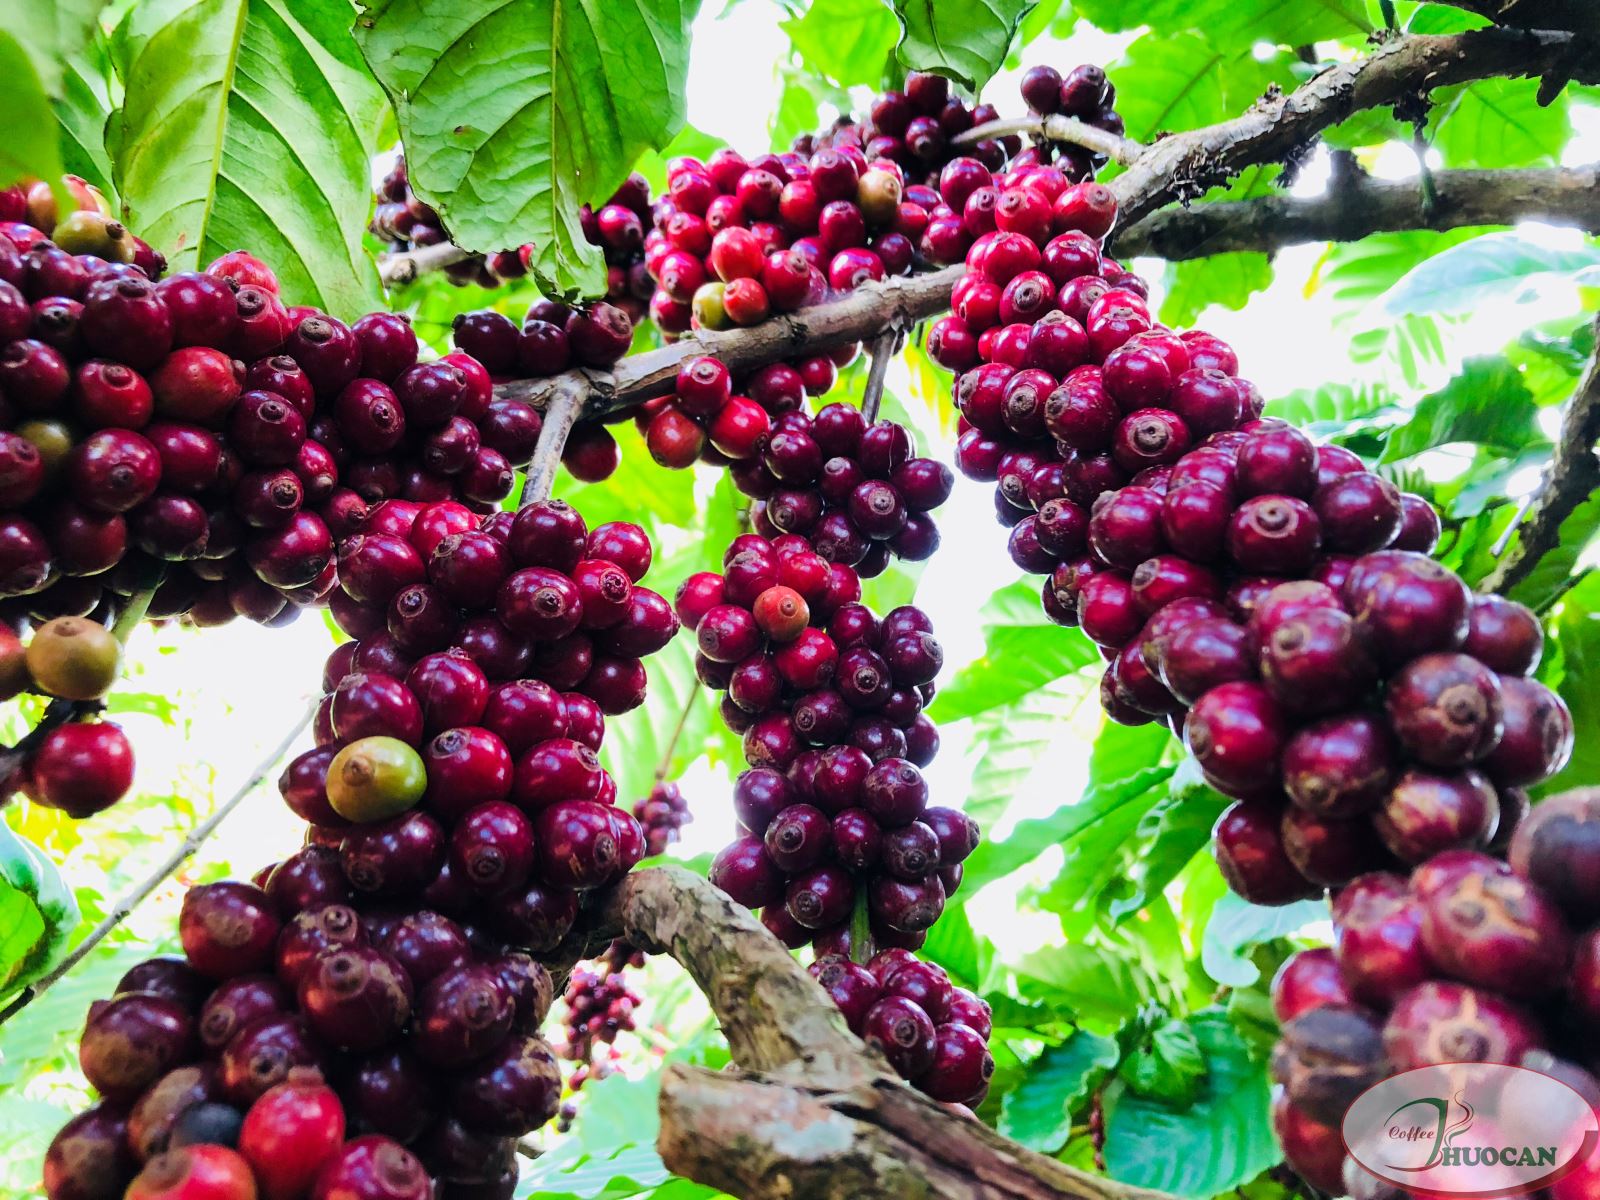 ICO: Sản lượng cà phê toàn cầu niên vụ 2019 - 2020 giảm 1,6% so với niên vụ trước